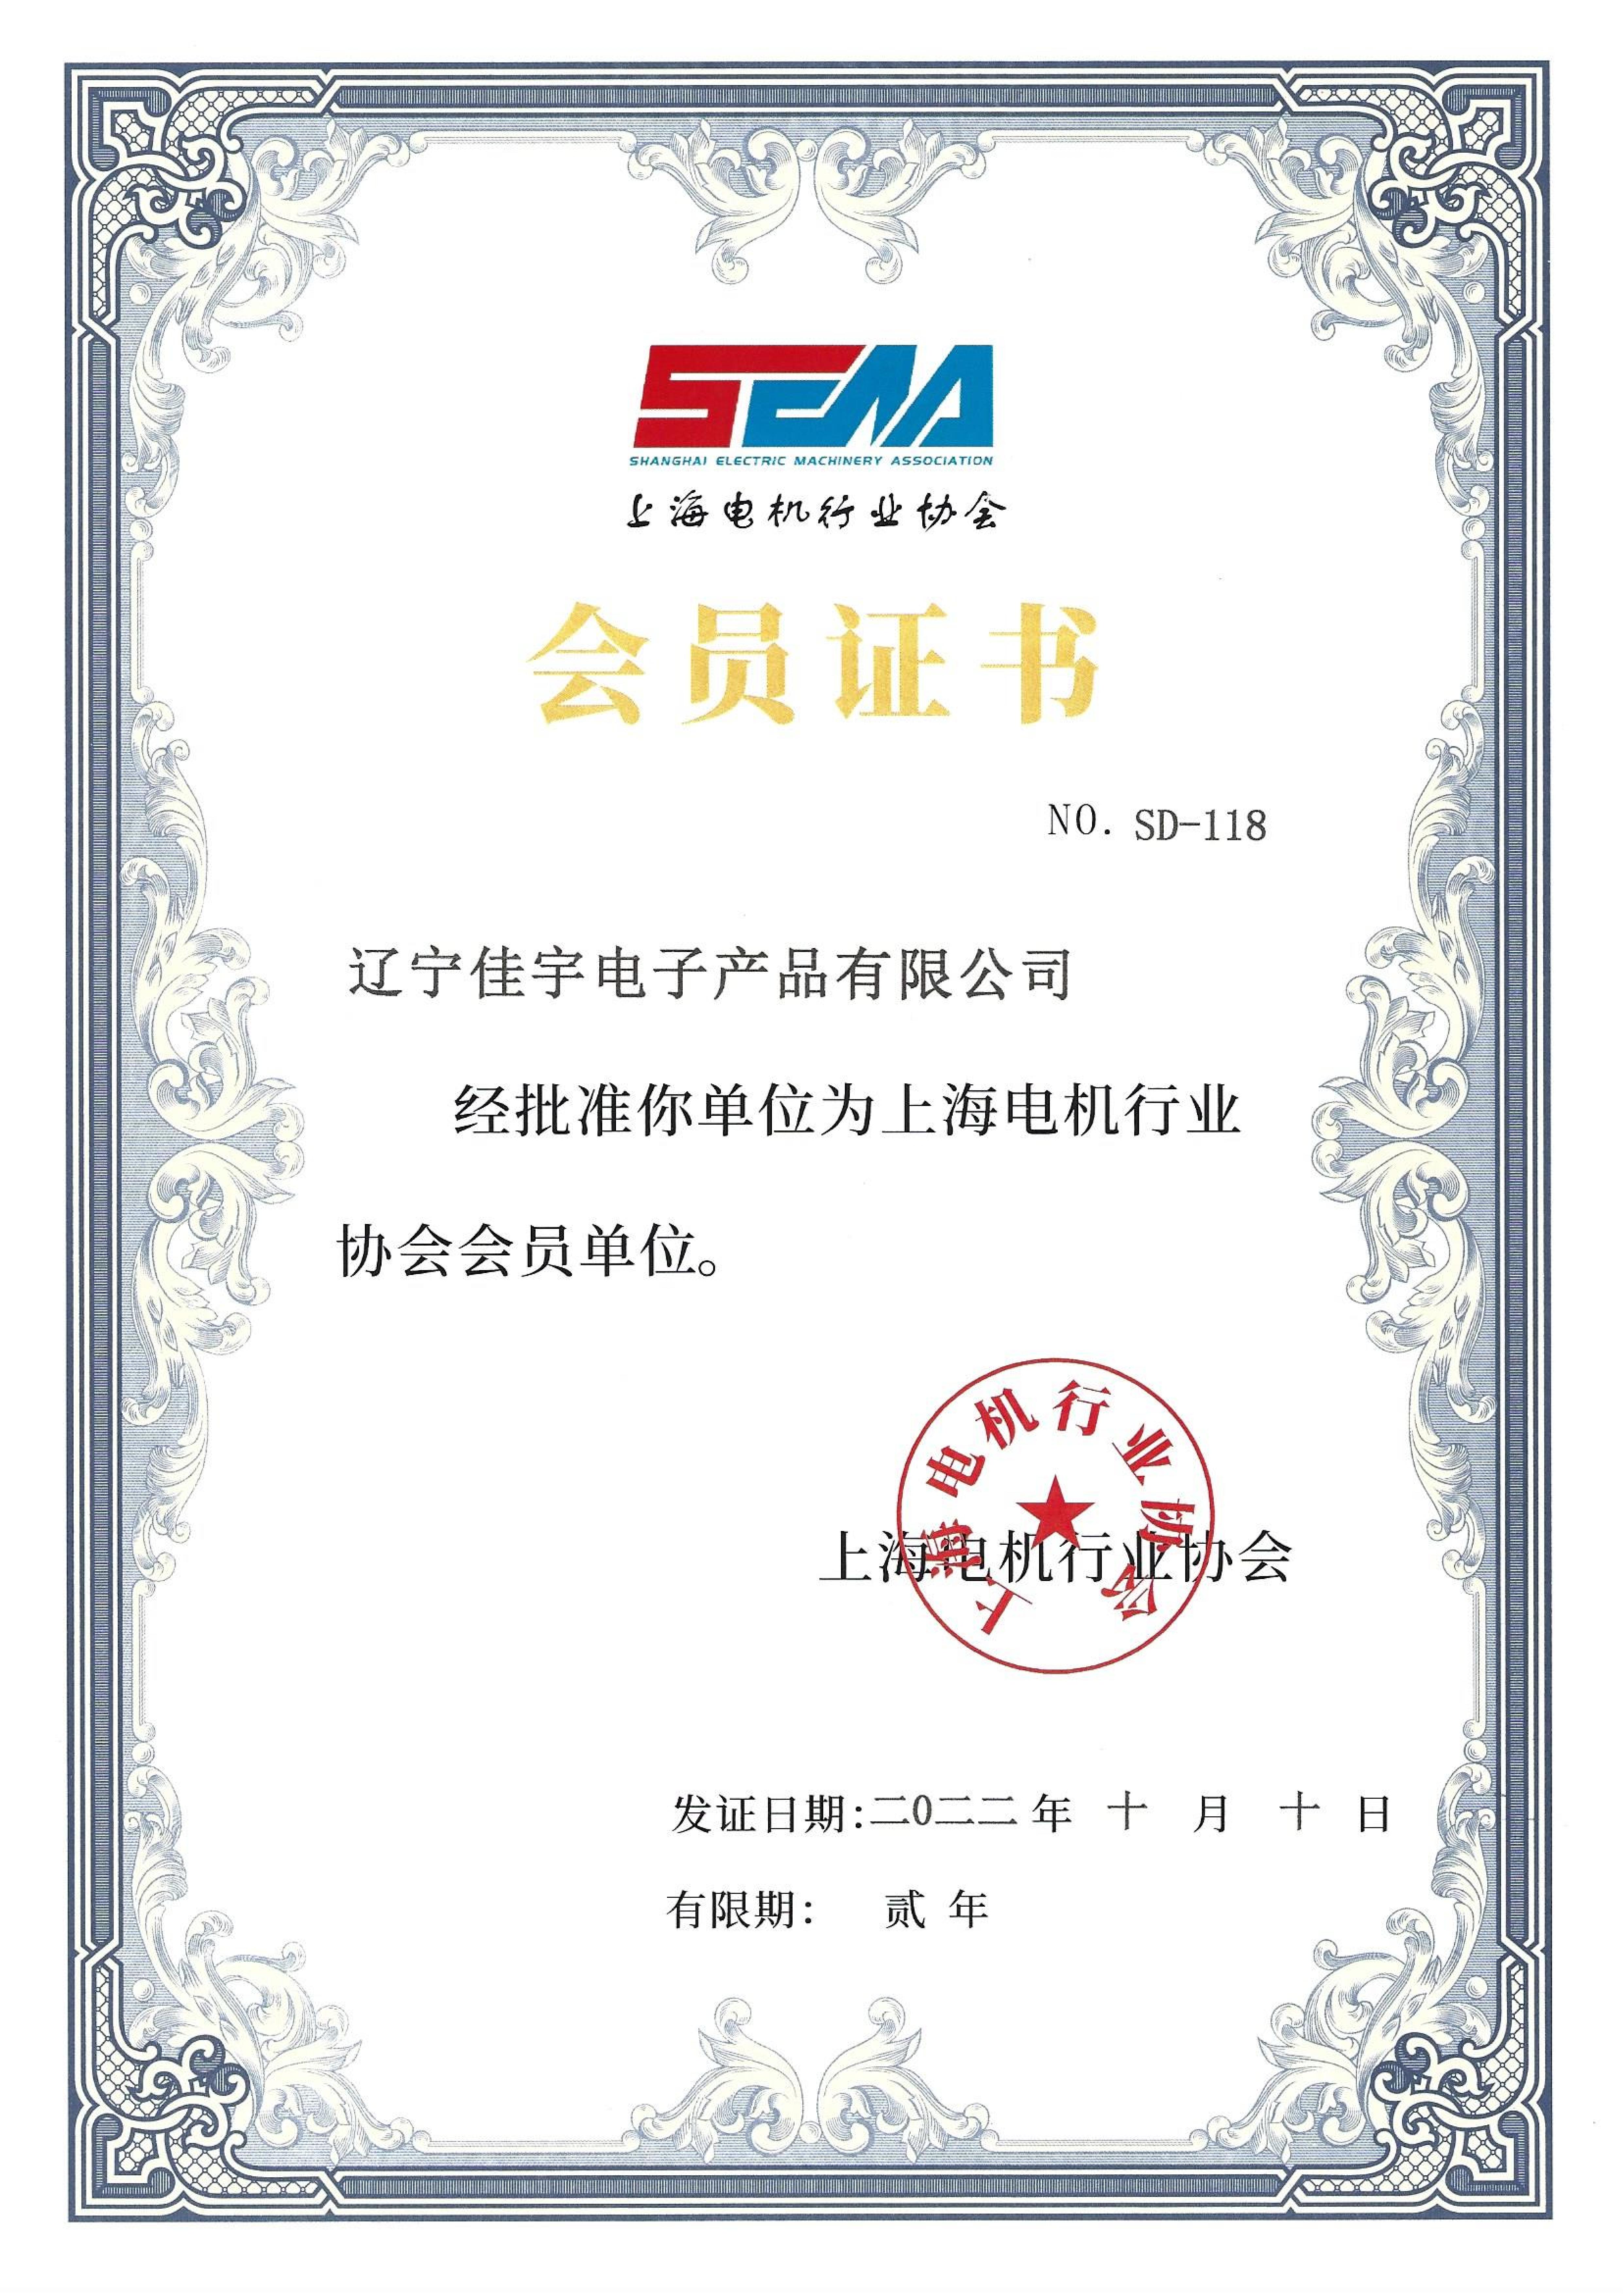 عضوية جمعية شنغهاي لصناعة الآلات الكهربائية